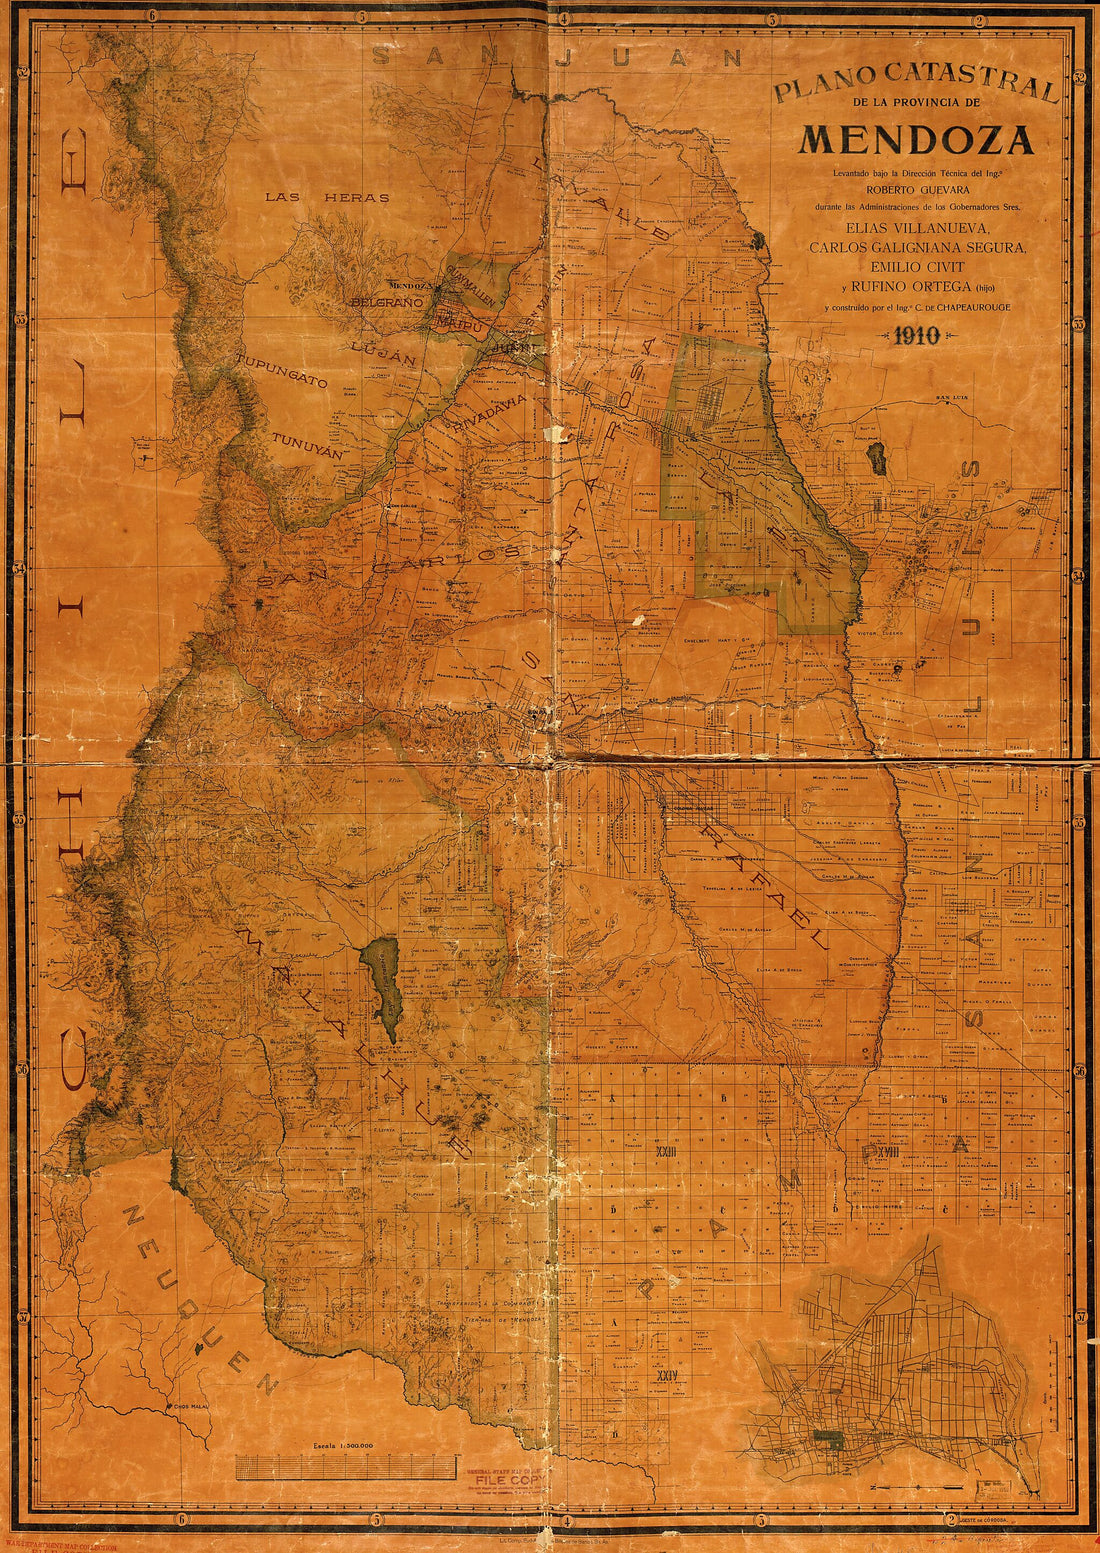 This old map of Plano Catastral De La Provincia De Mendoza from 1910 was created by Carlos De Chapeaurouge in 1910